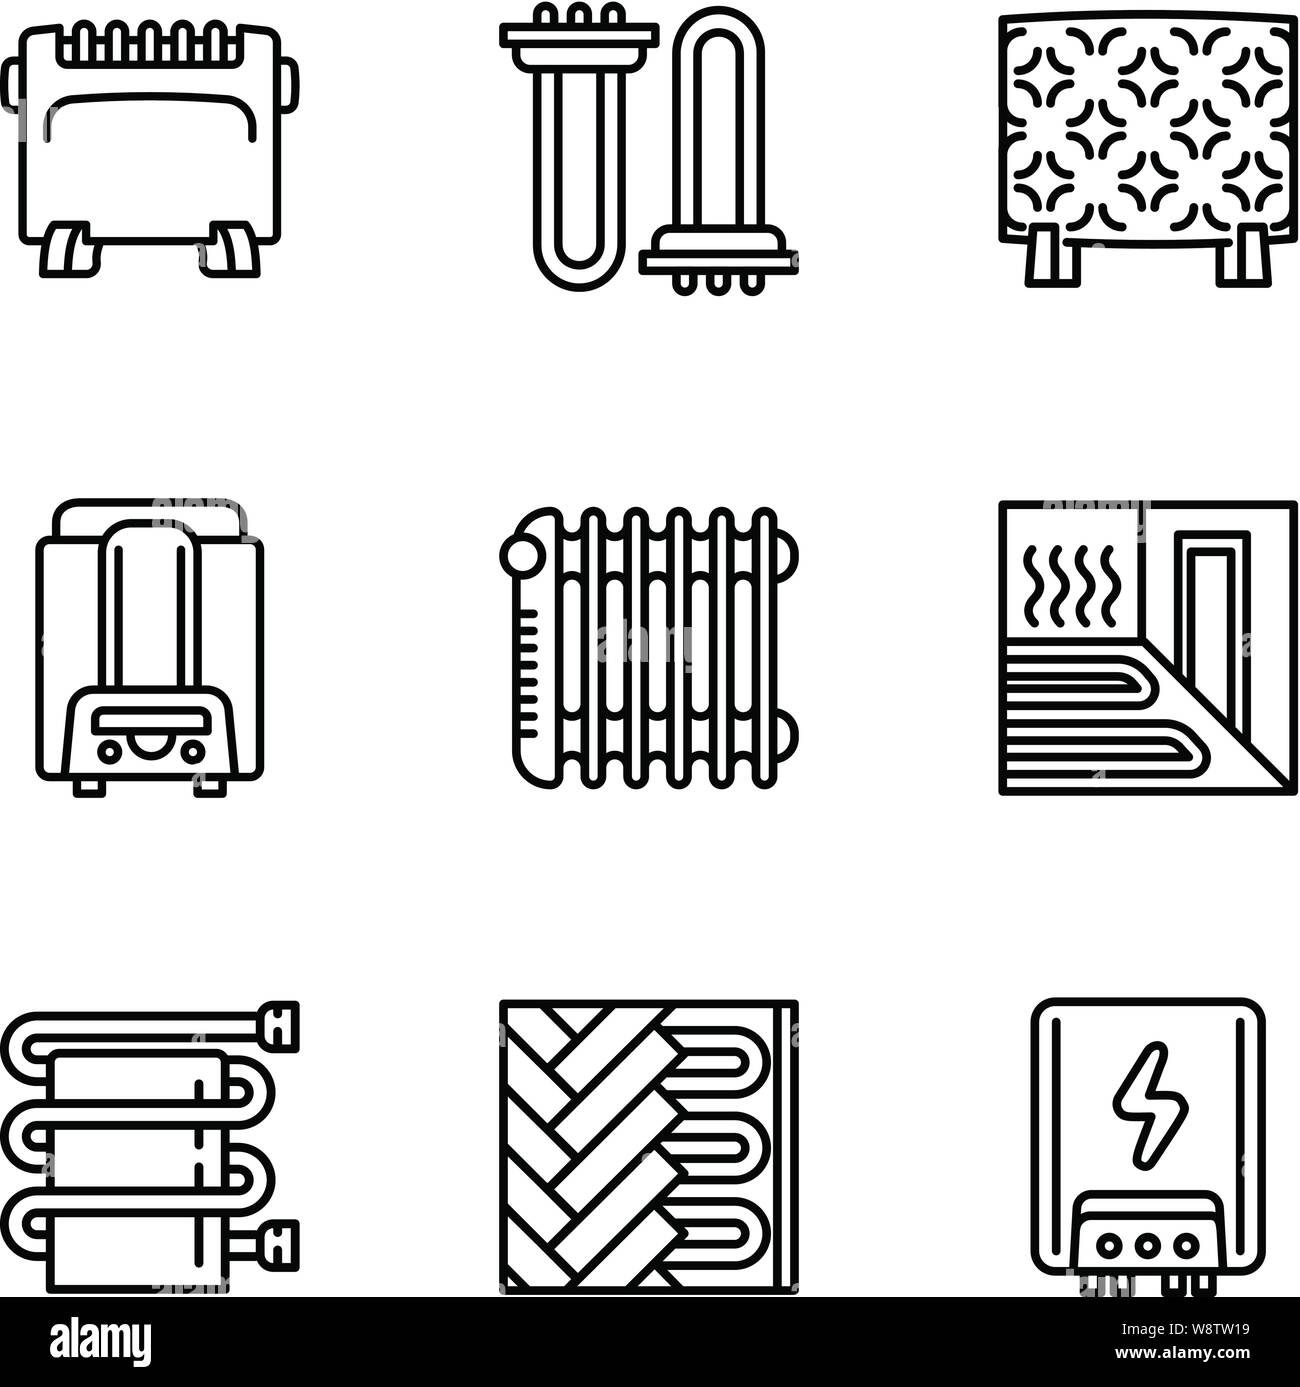 Chambre chauffage moderne icon set. Description Ensemble de 9 chambre chauffage moderne icônes vectorielles pour le web design isolé sur fond blanc Illustration de Vecteur